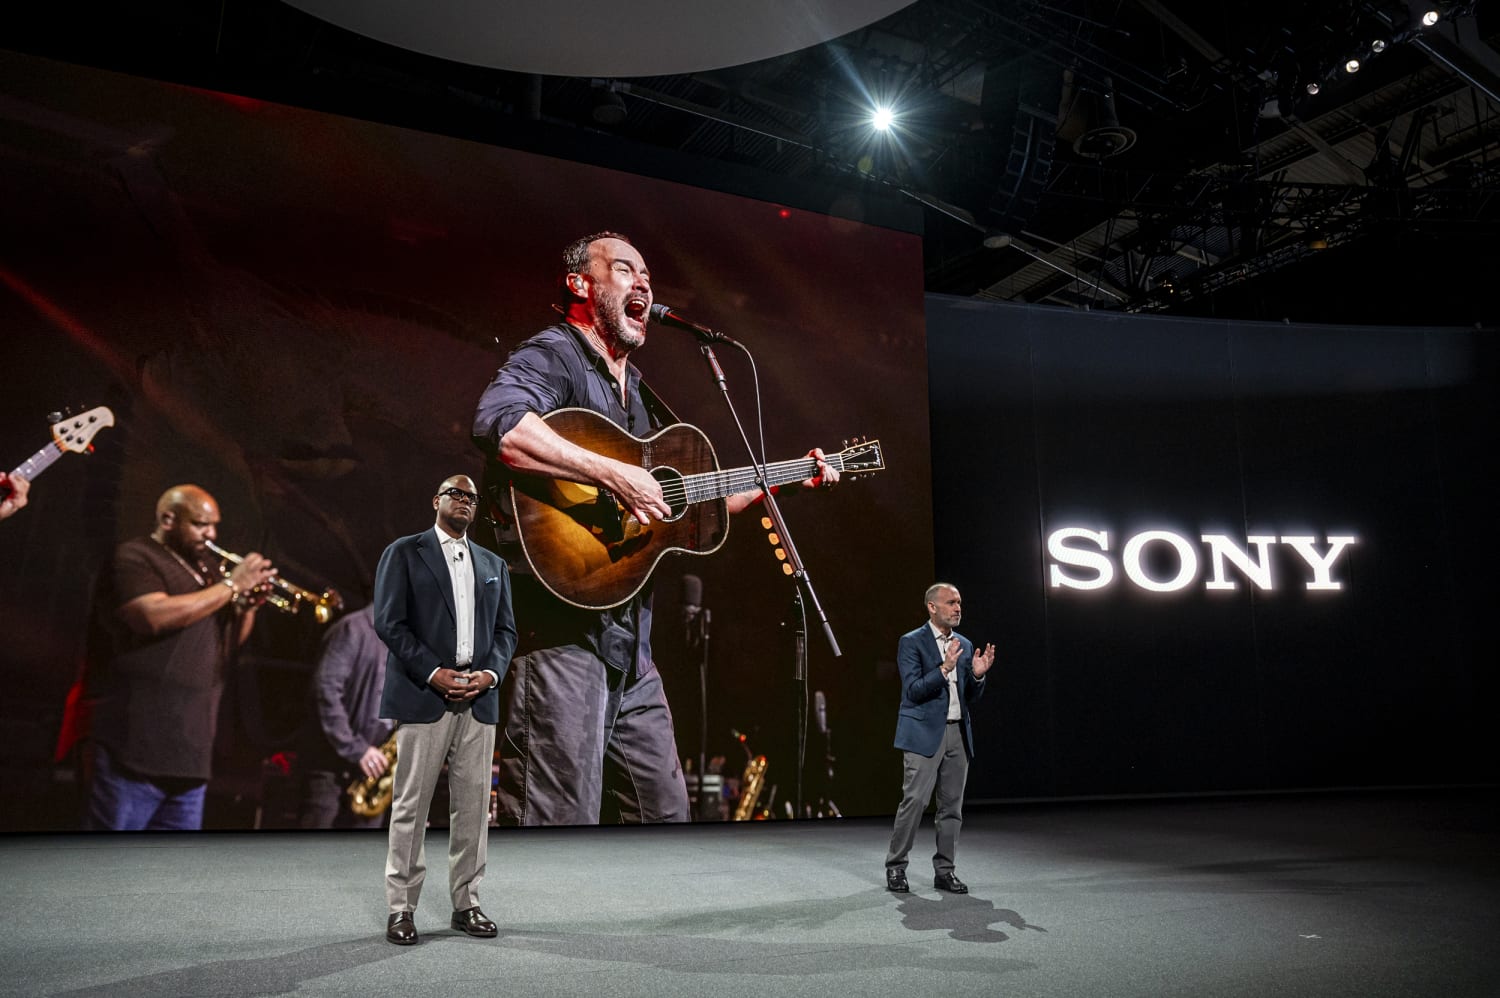 Sony Music Group alerta mais de 700 empresas contra o uso de seu conteúdo para treinar inteligência artificial